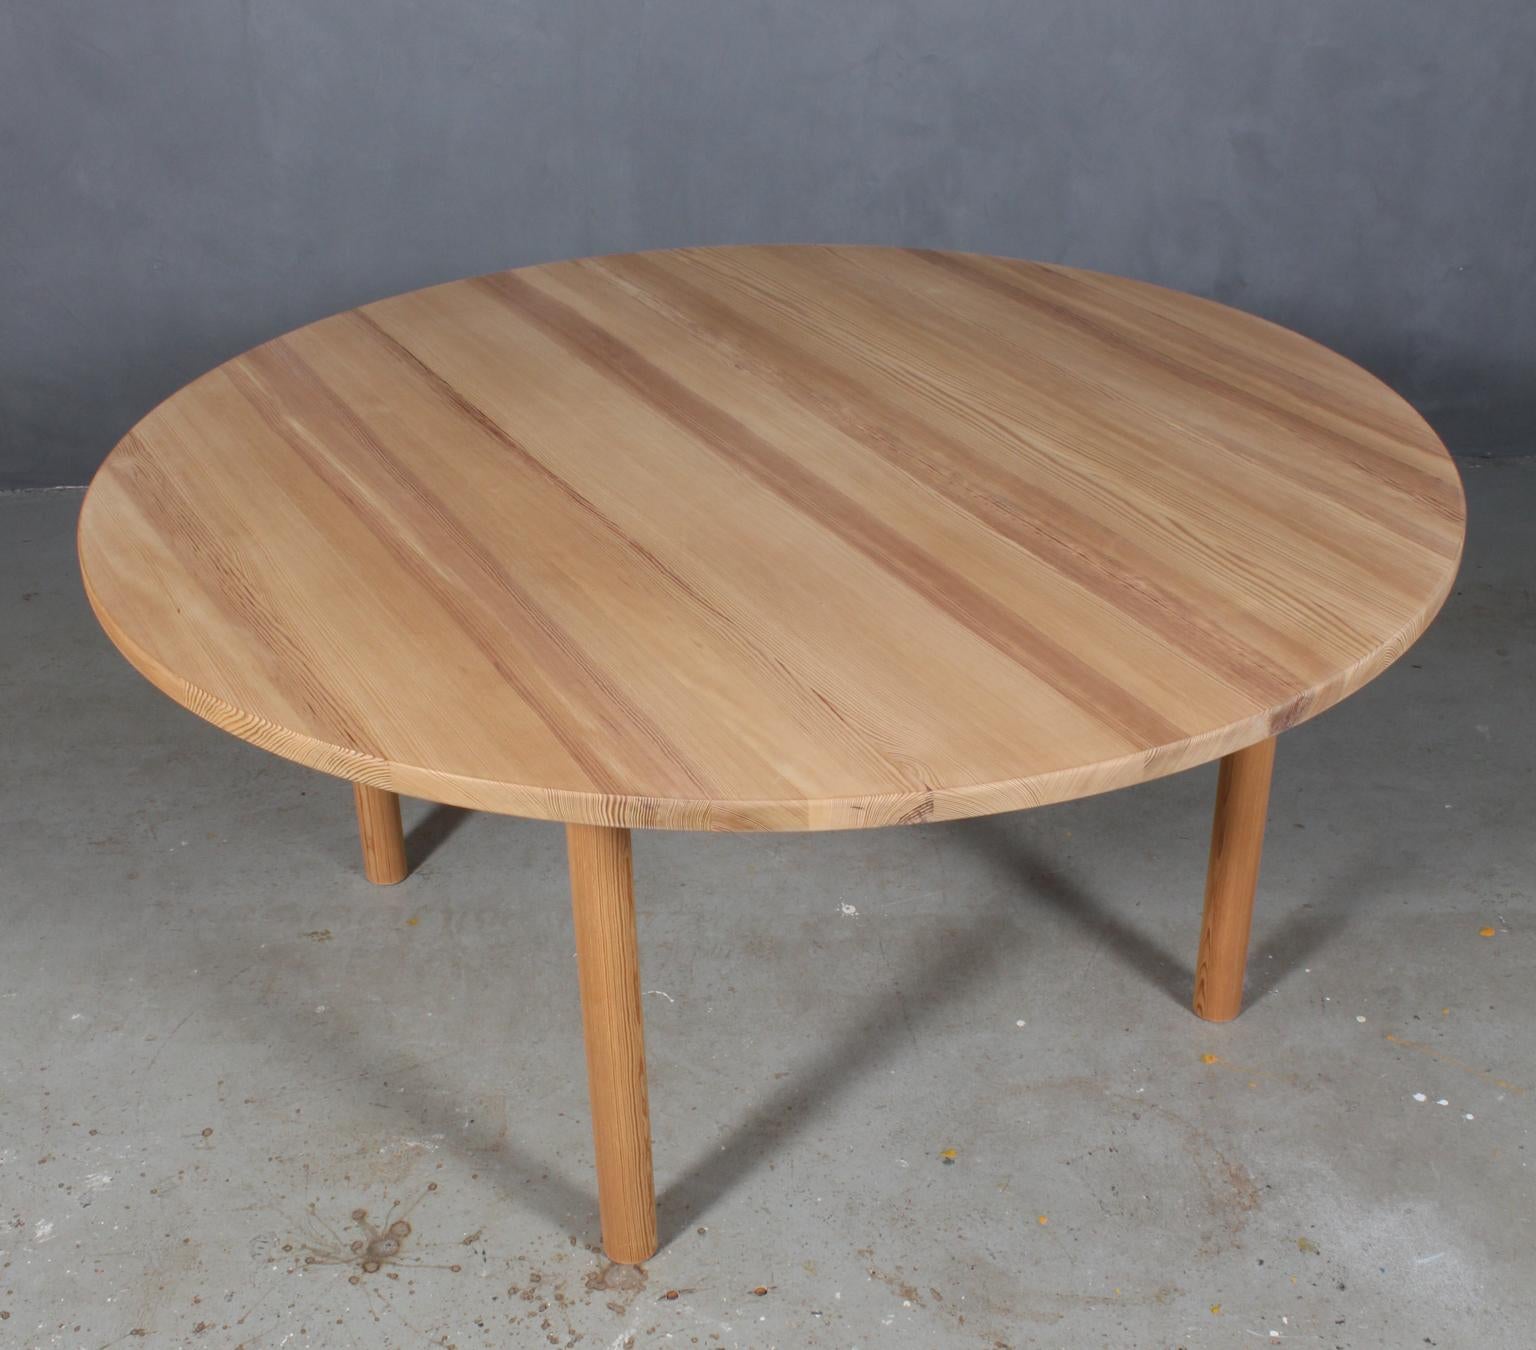 Børge Mogensen dining table made by solid oregone pine.

Frame in solid oregone pine.

Model Asserbo, made by Karl Andersson & Söner, Huskvarna, Sweden.